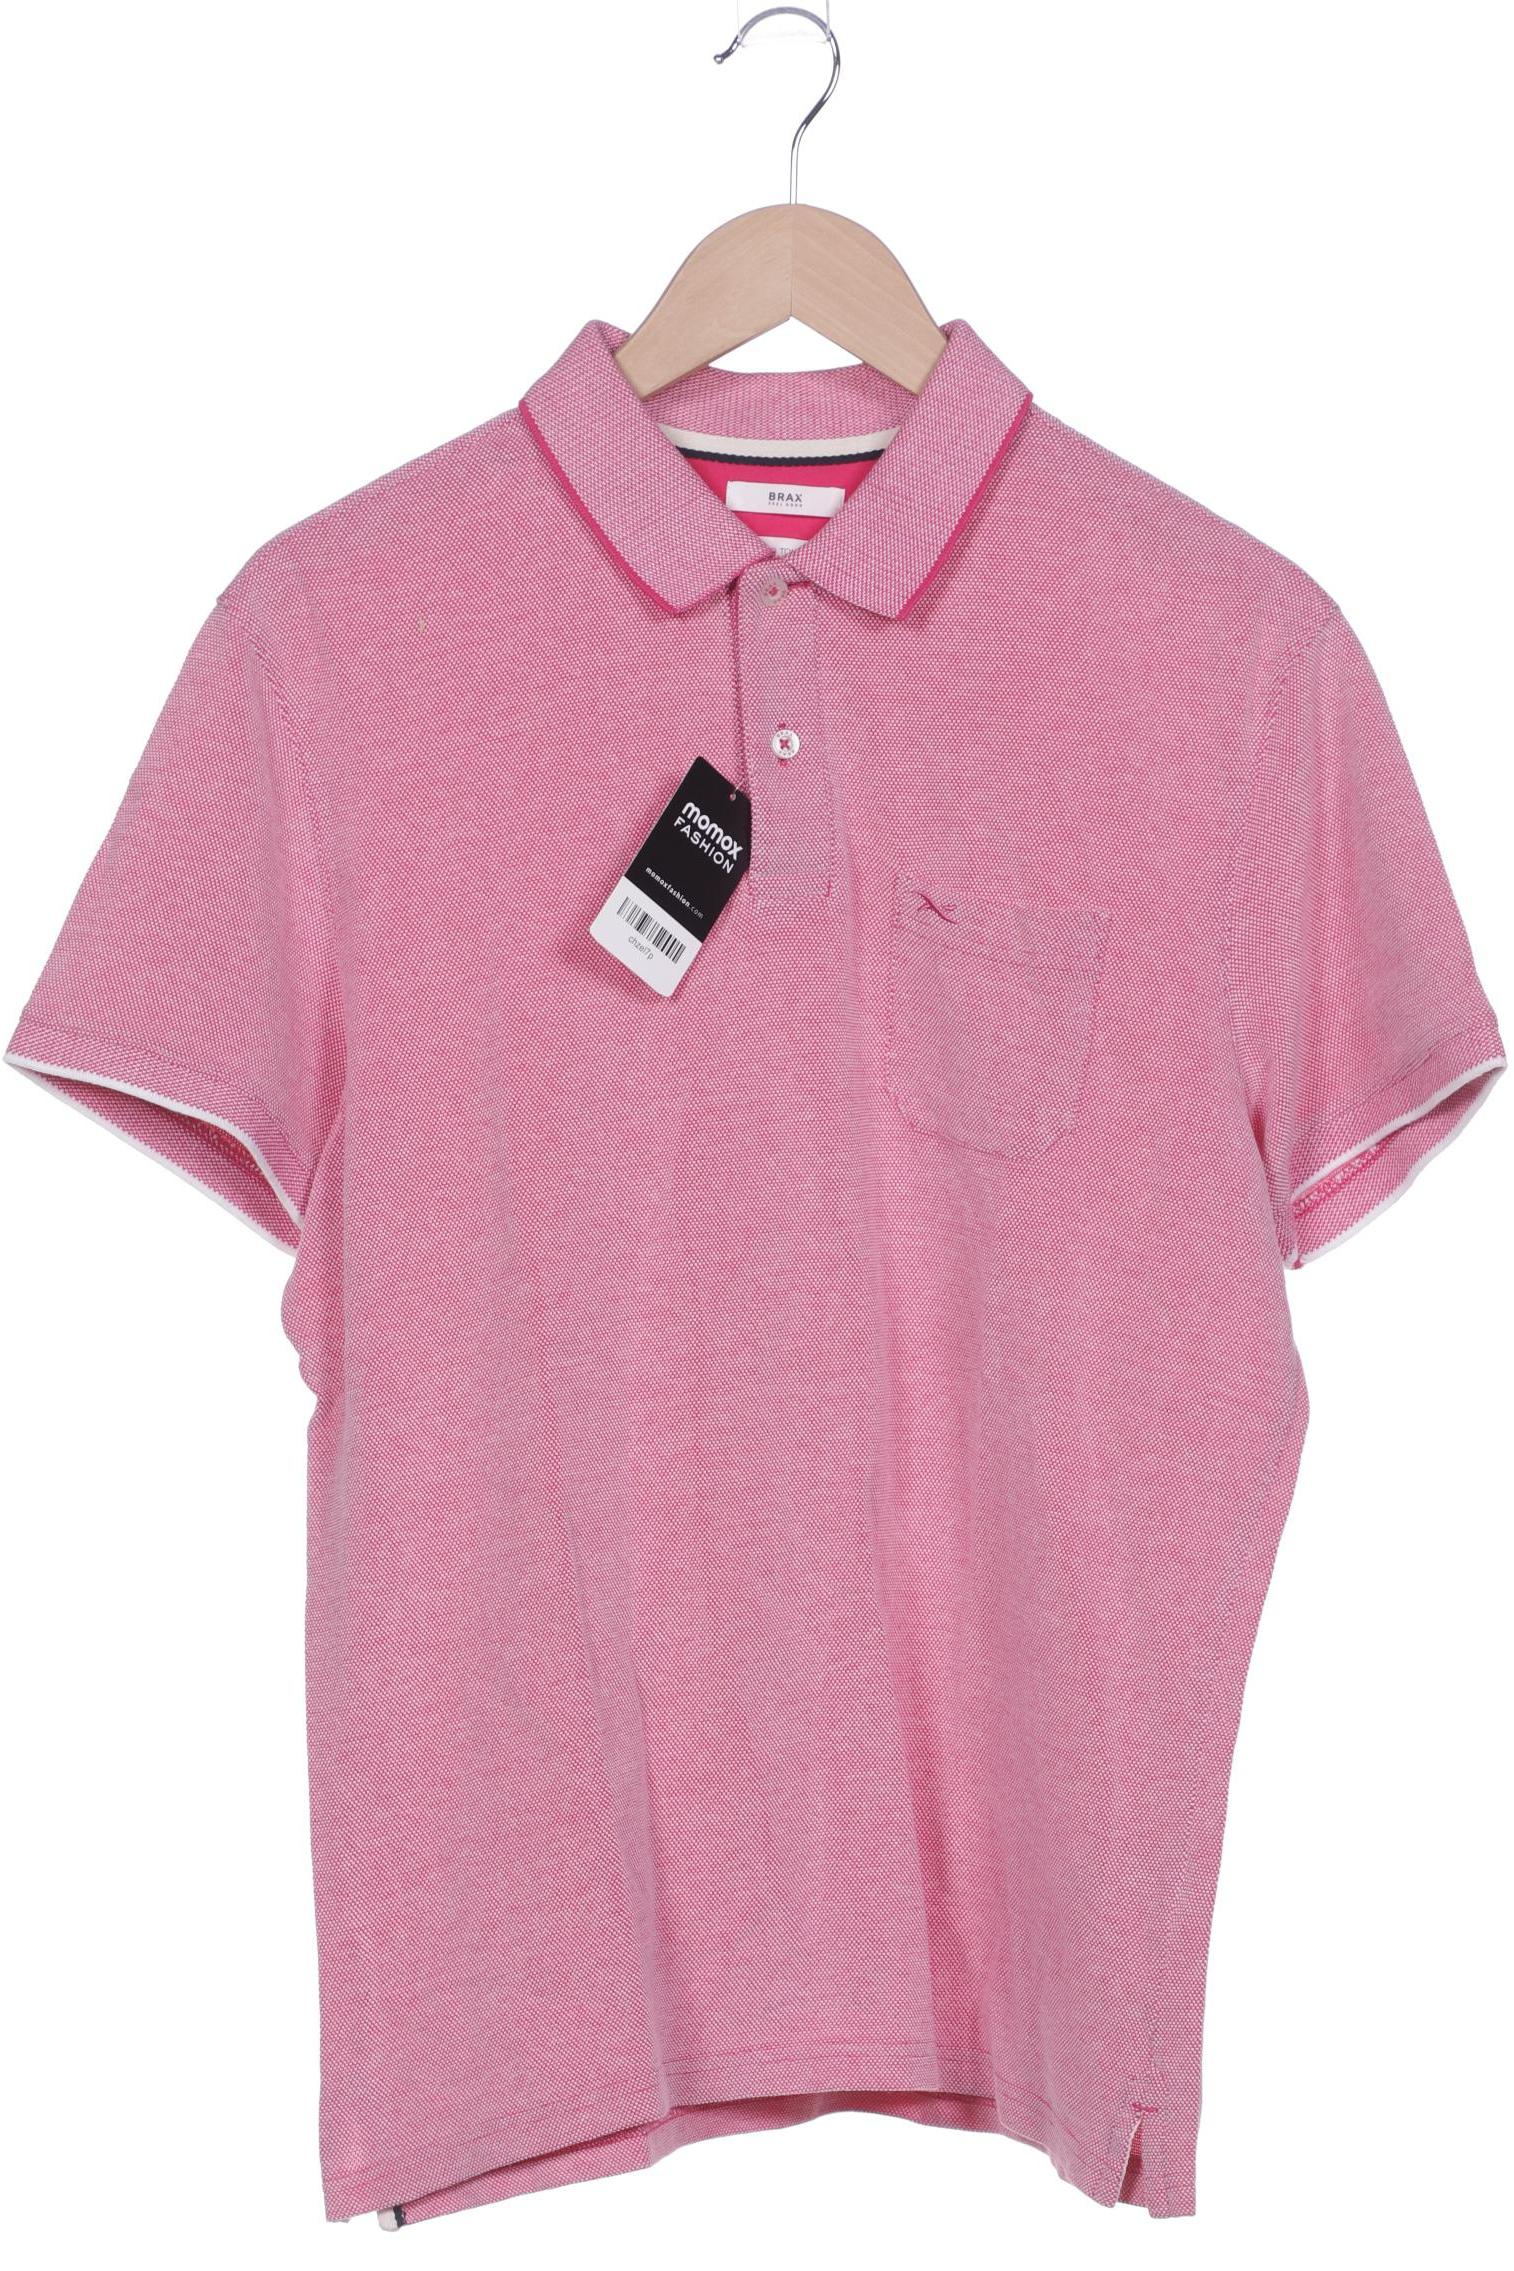 BRAX Herren Poloshirt, pink von BRAX